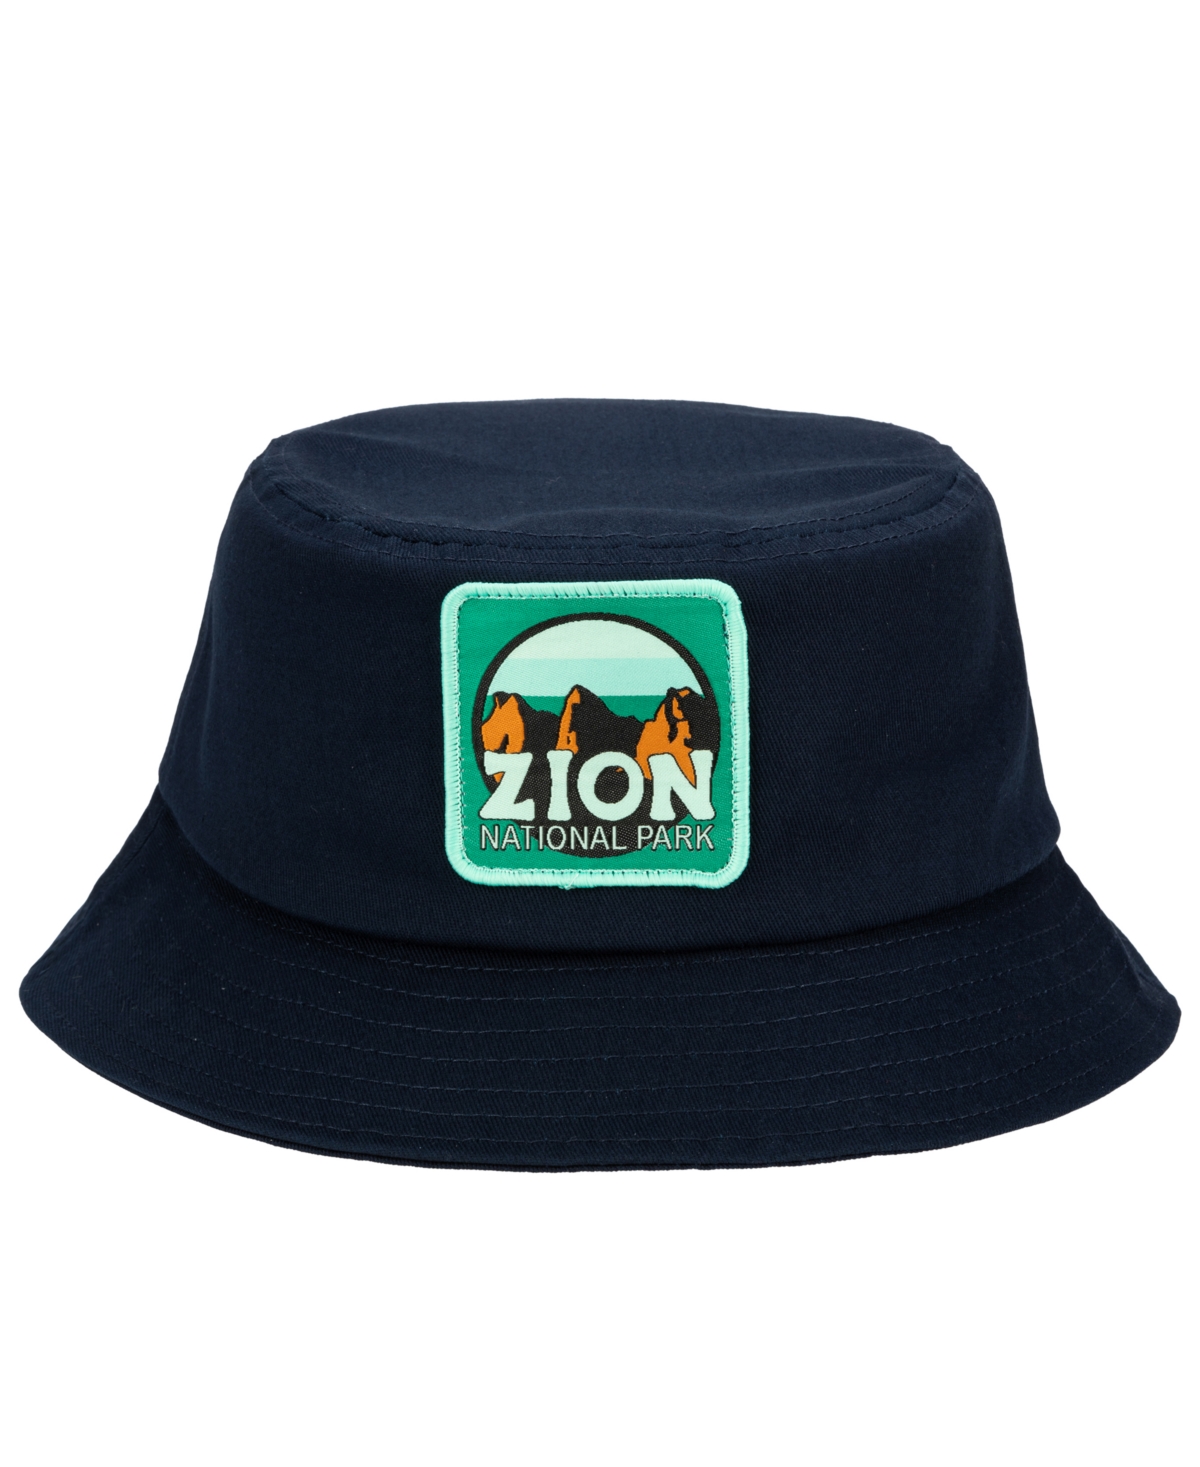 Men's Bucket Hat - Zion Navy